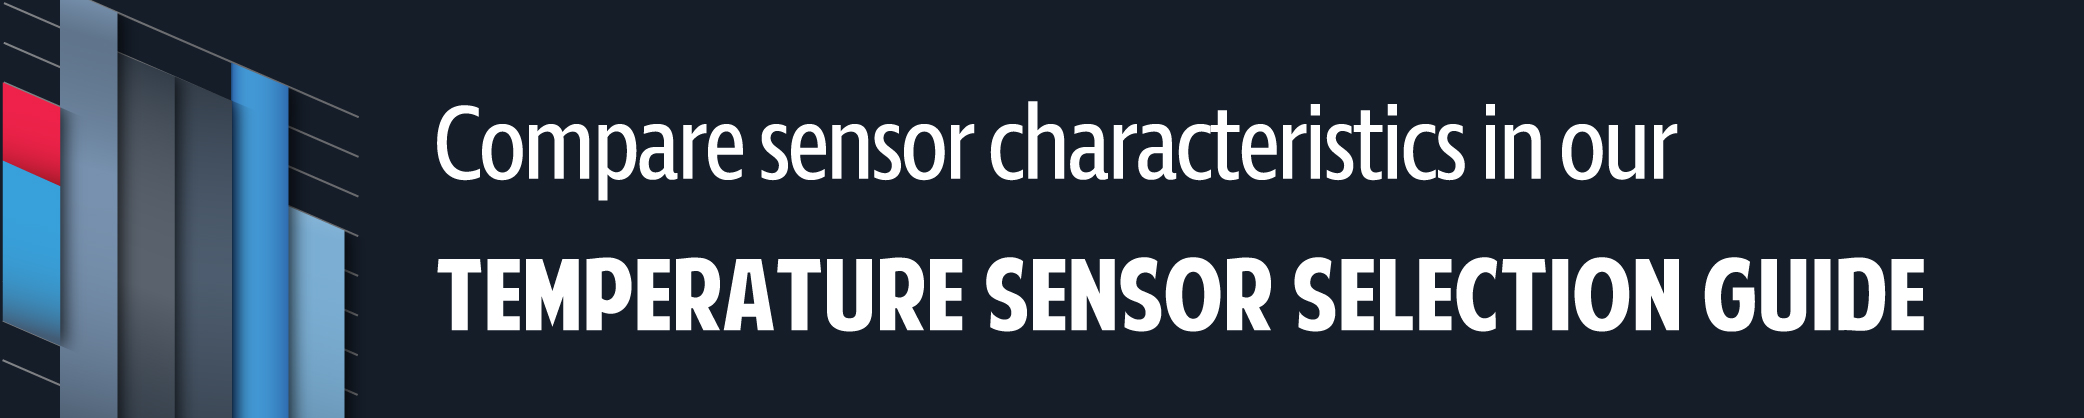 SensorSelectionGuide